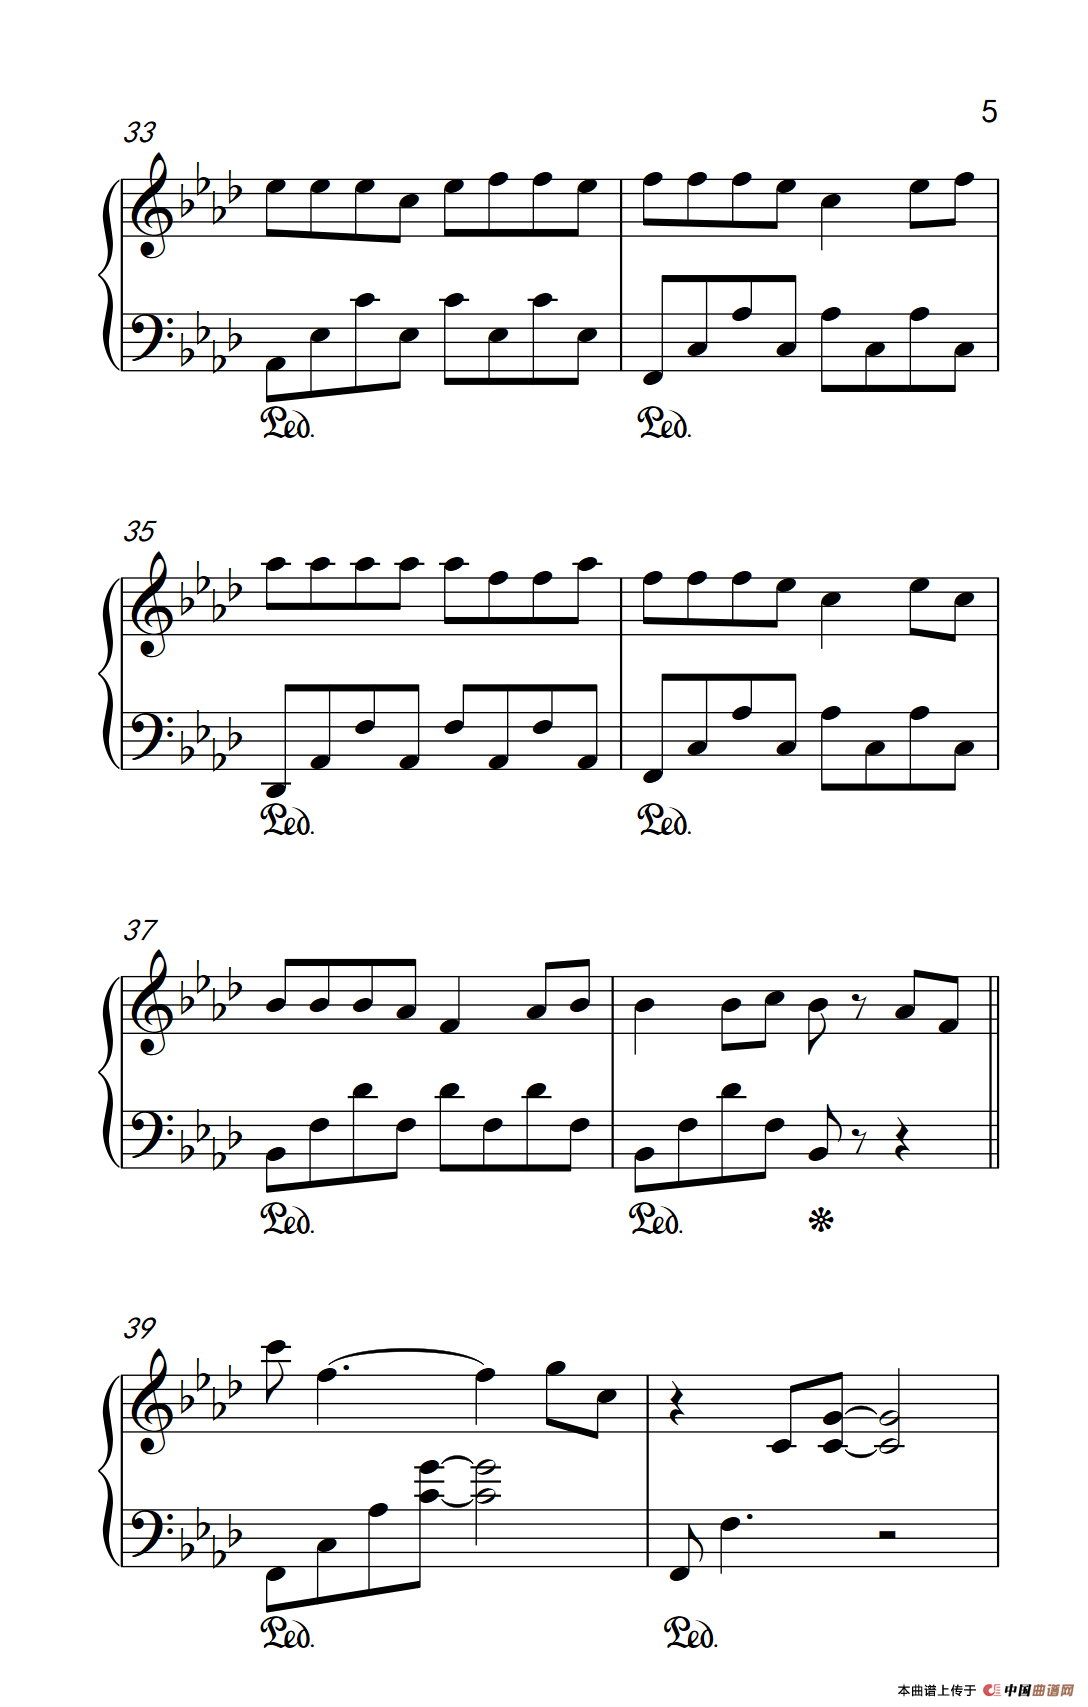 《西海情歌》钢琴曲谱图分享